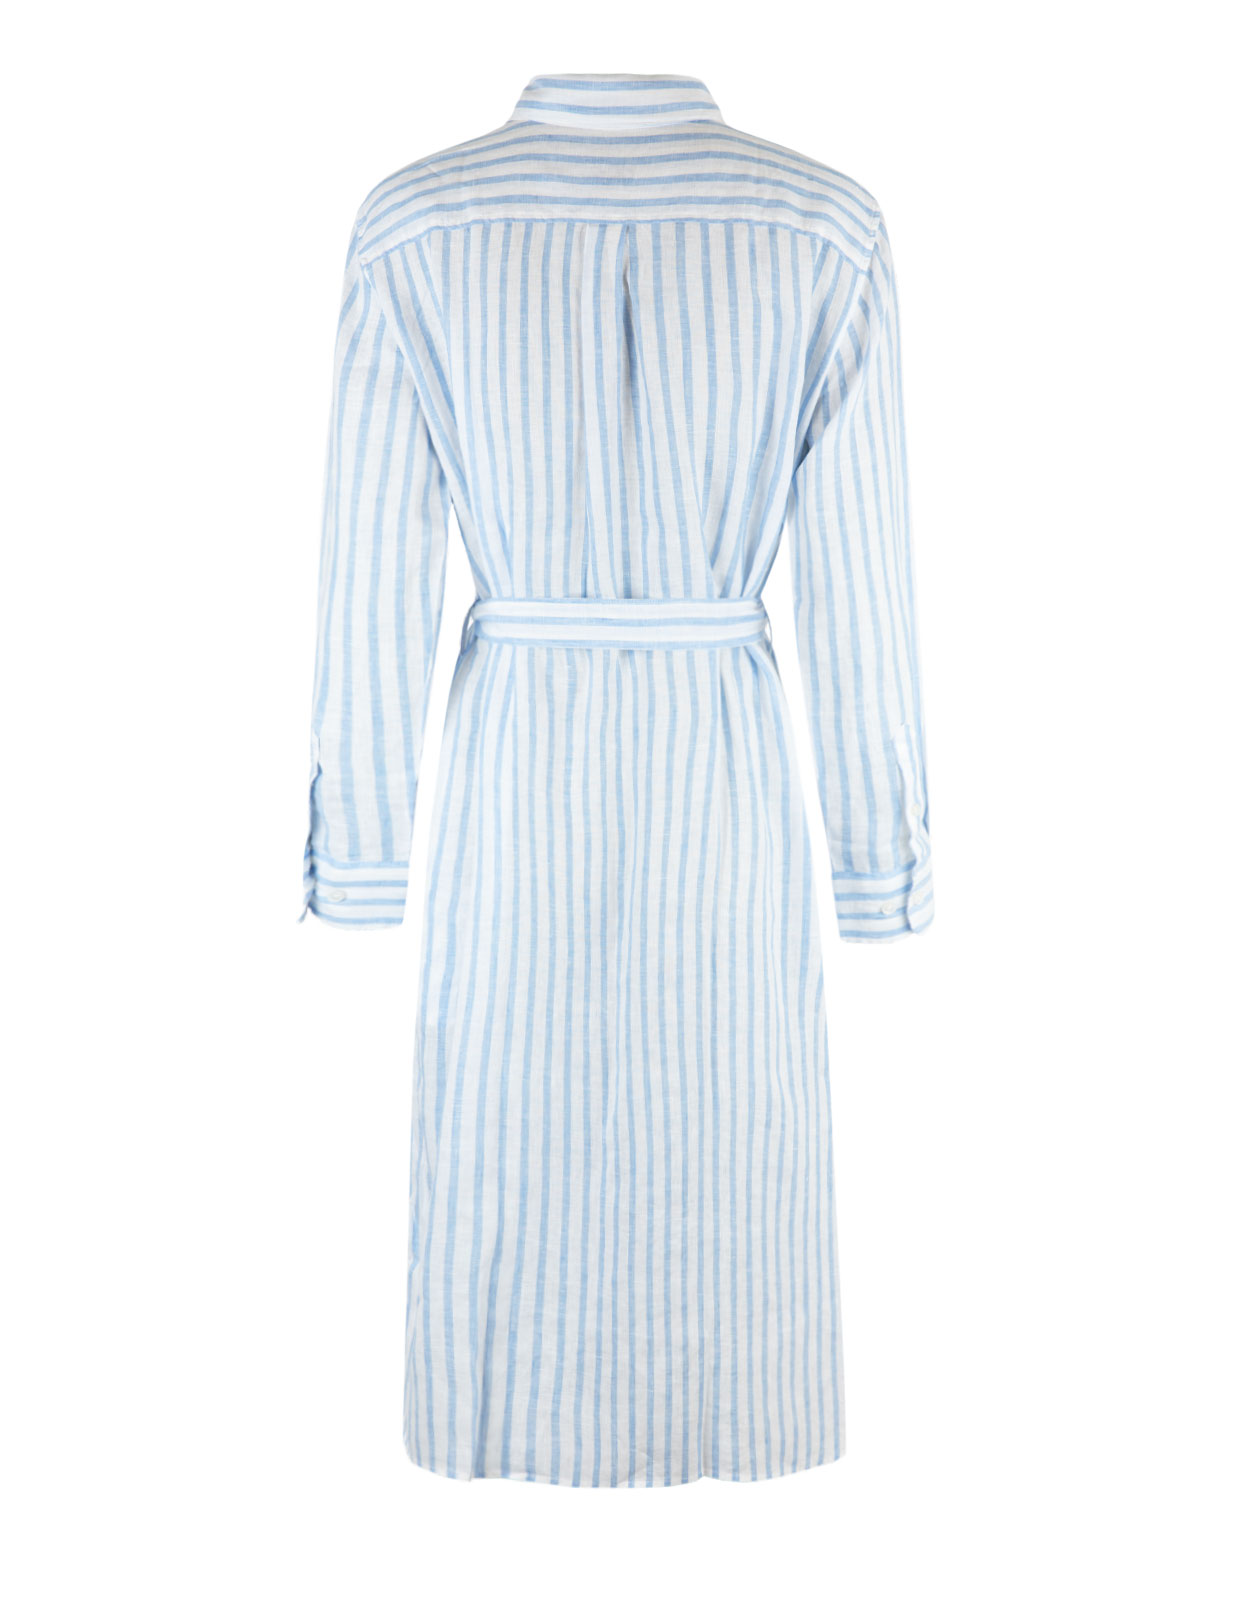 Cora Striped Linnen Shirt Dress White/Light Blue